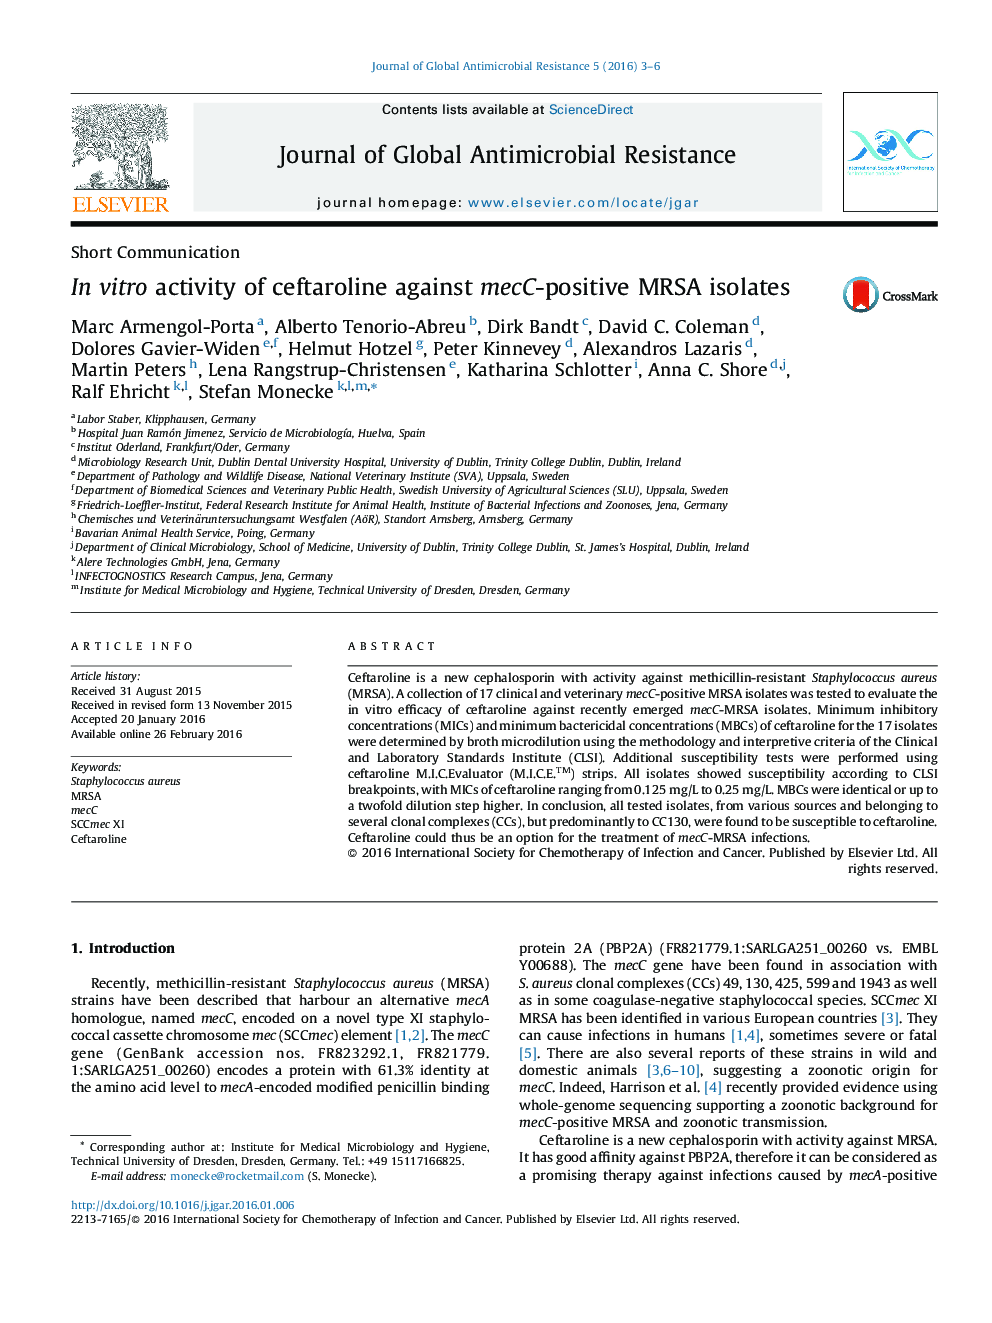 فعالیت آزمایشگاهی سفترولین در سویه های MRSA مثبت MECC